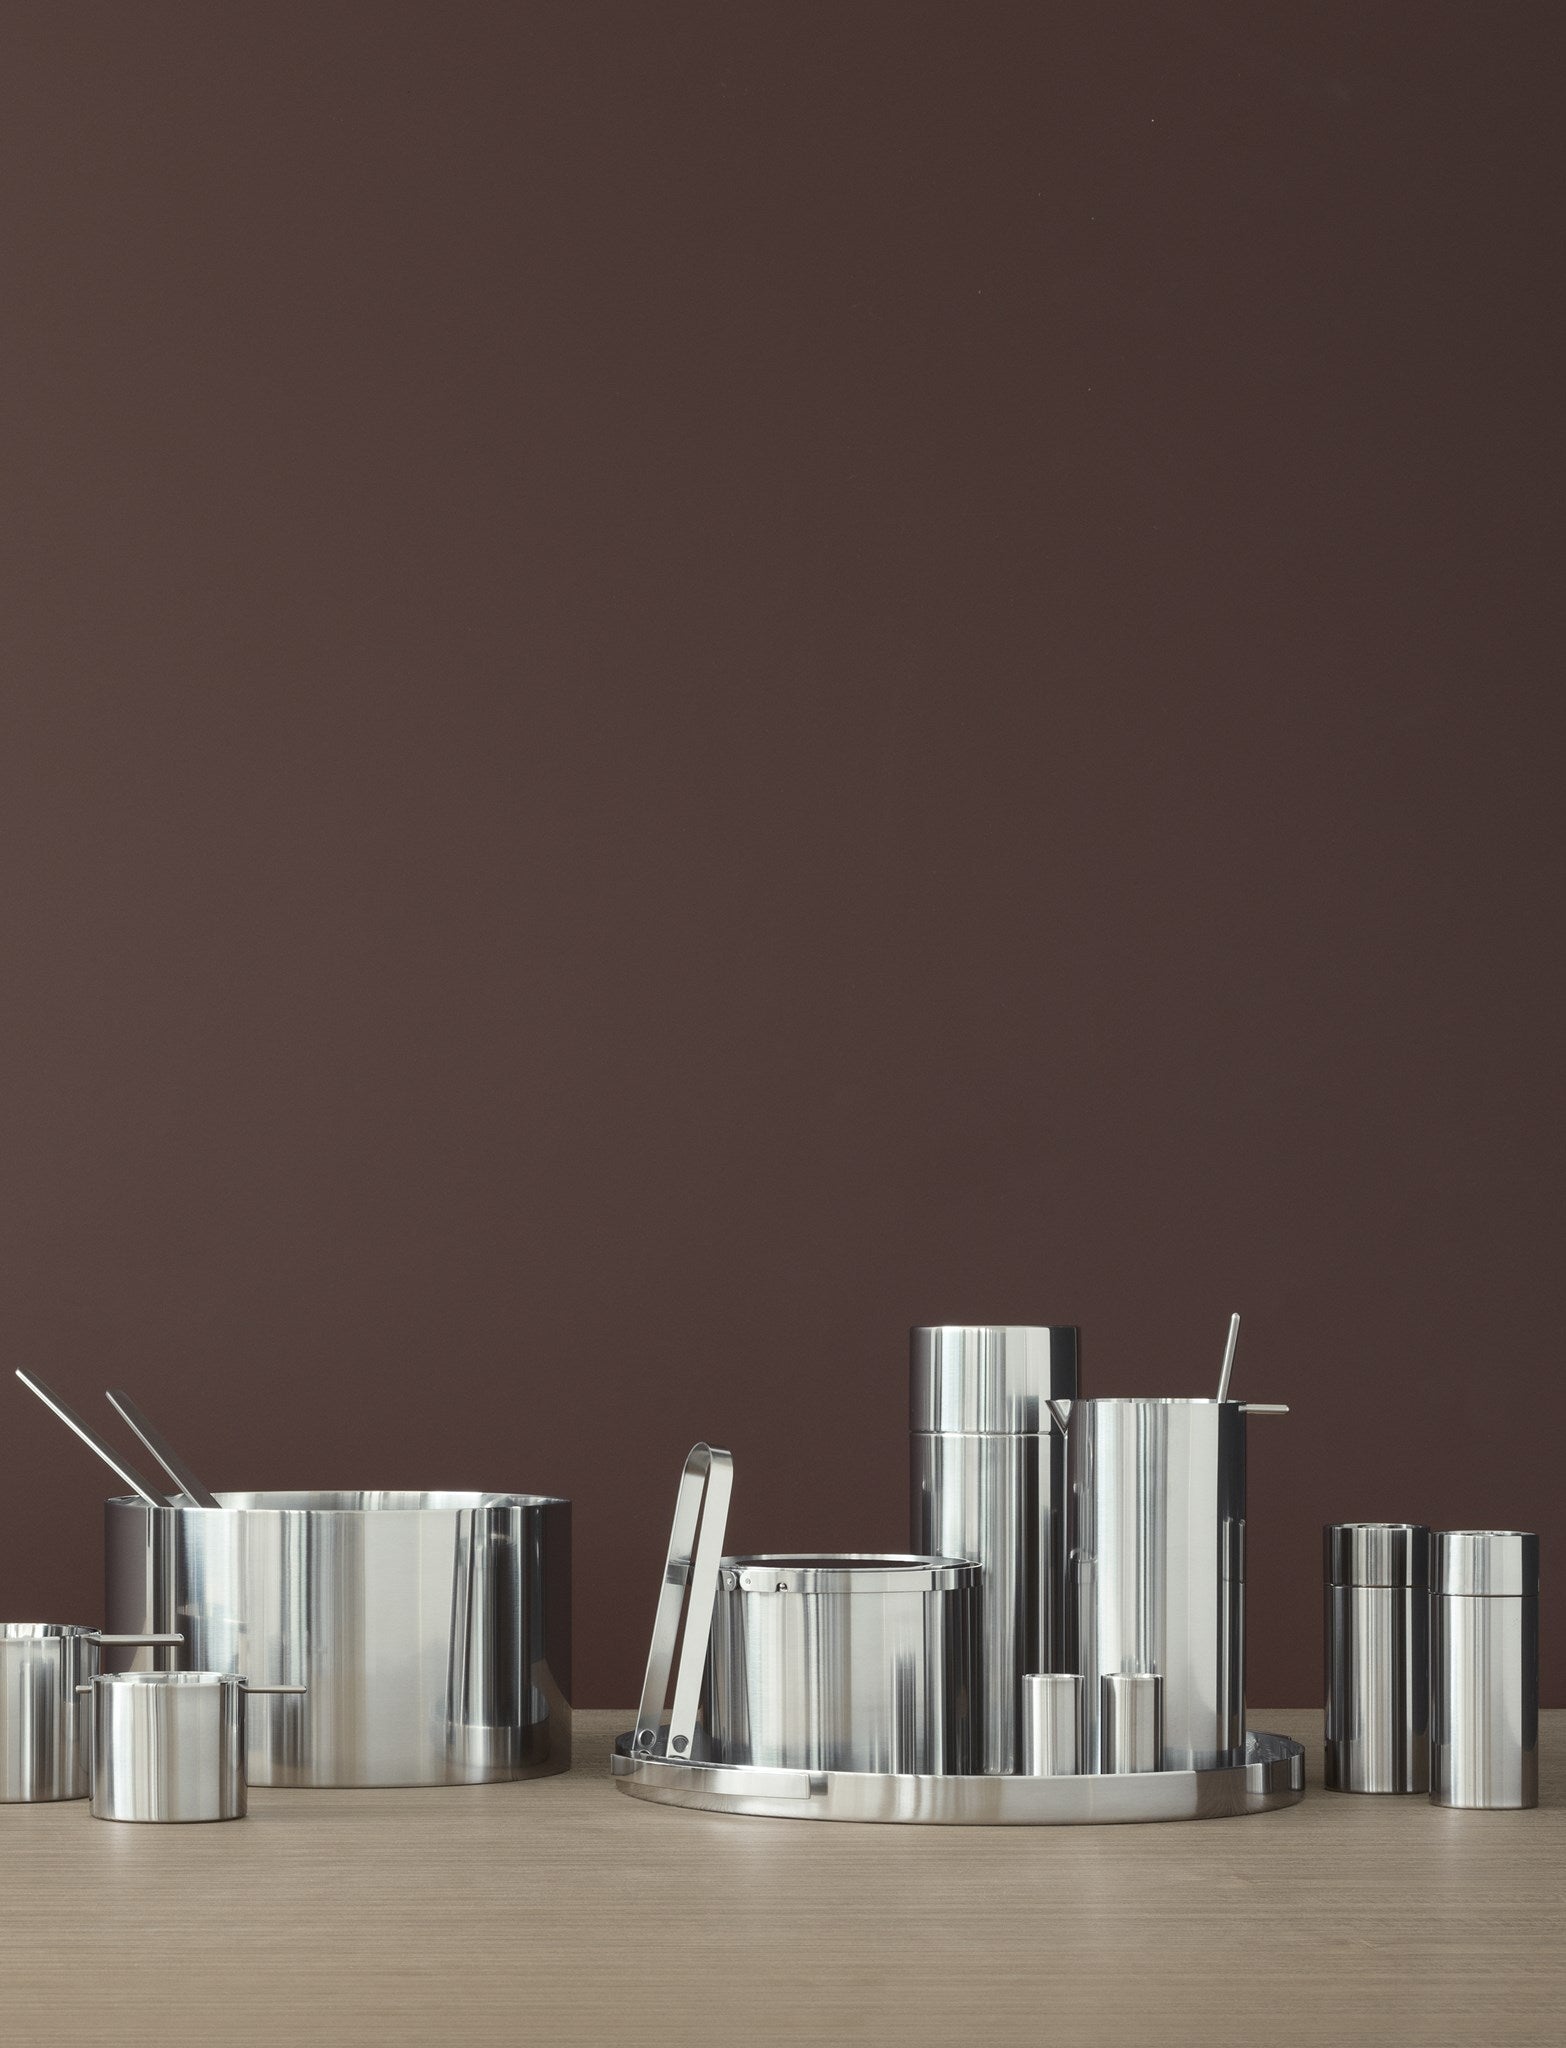 Stelton Arne Jacobsen Ashtray 6,5 Cm